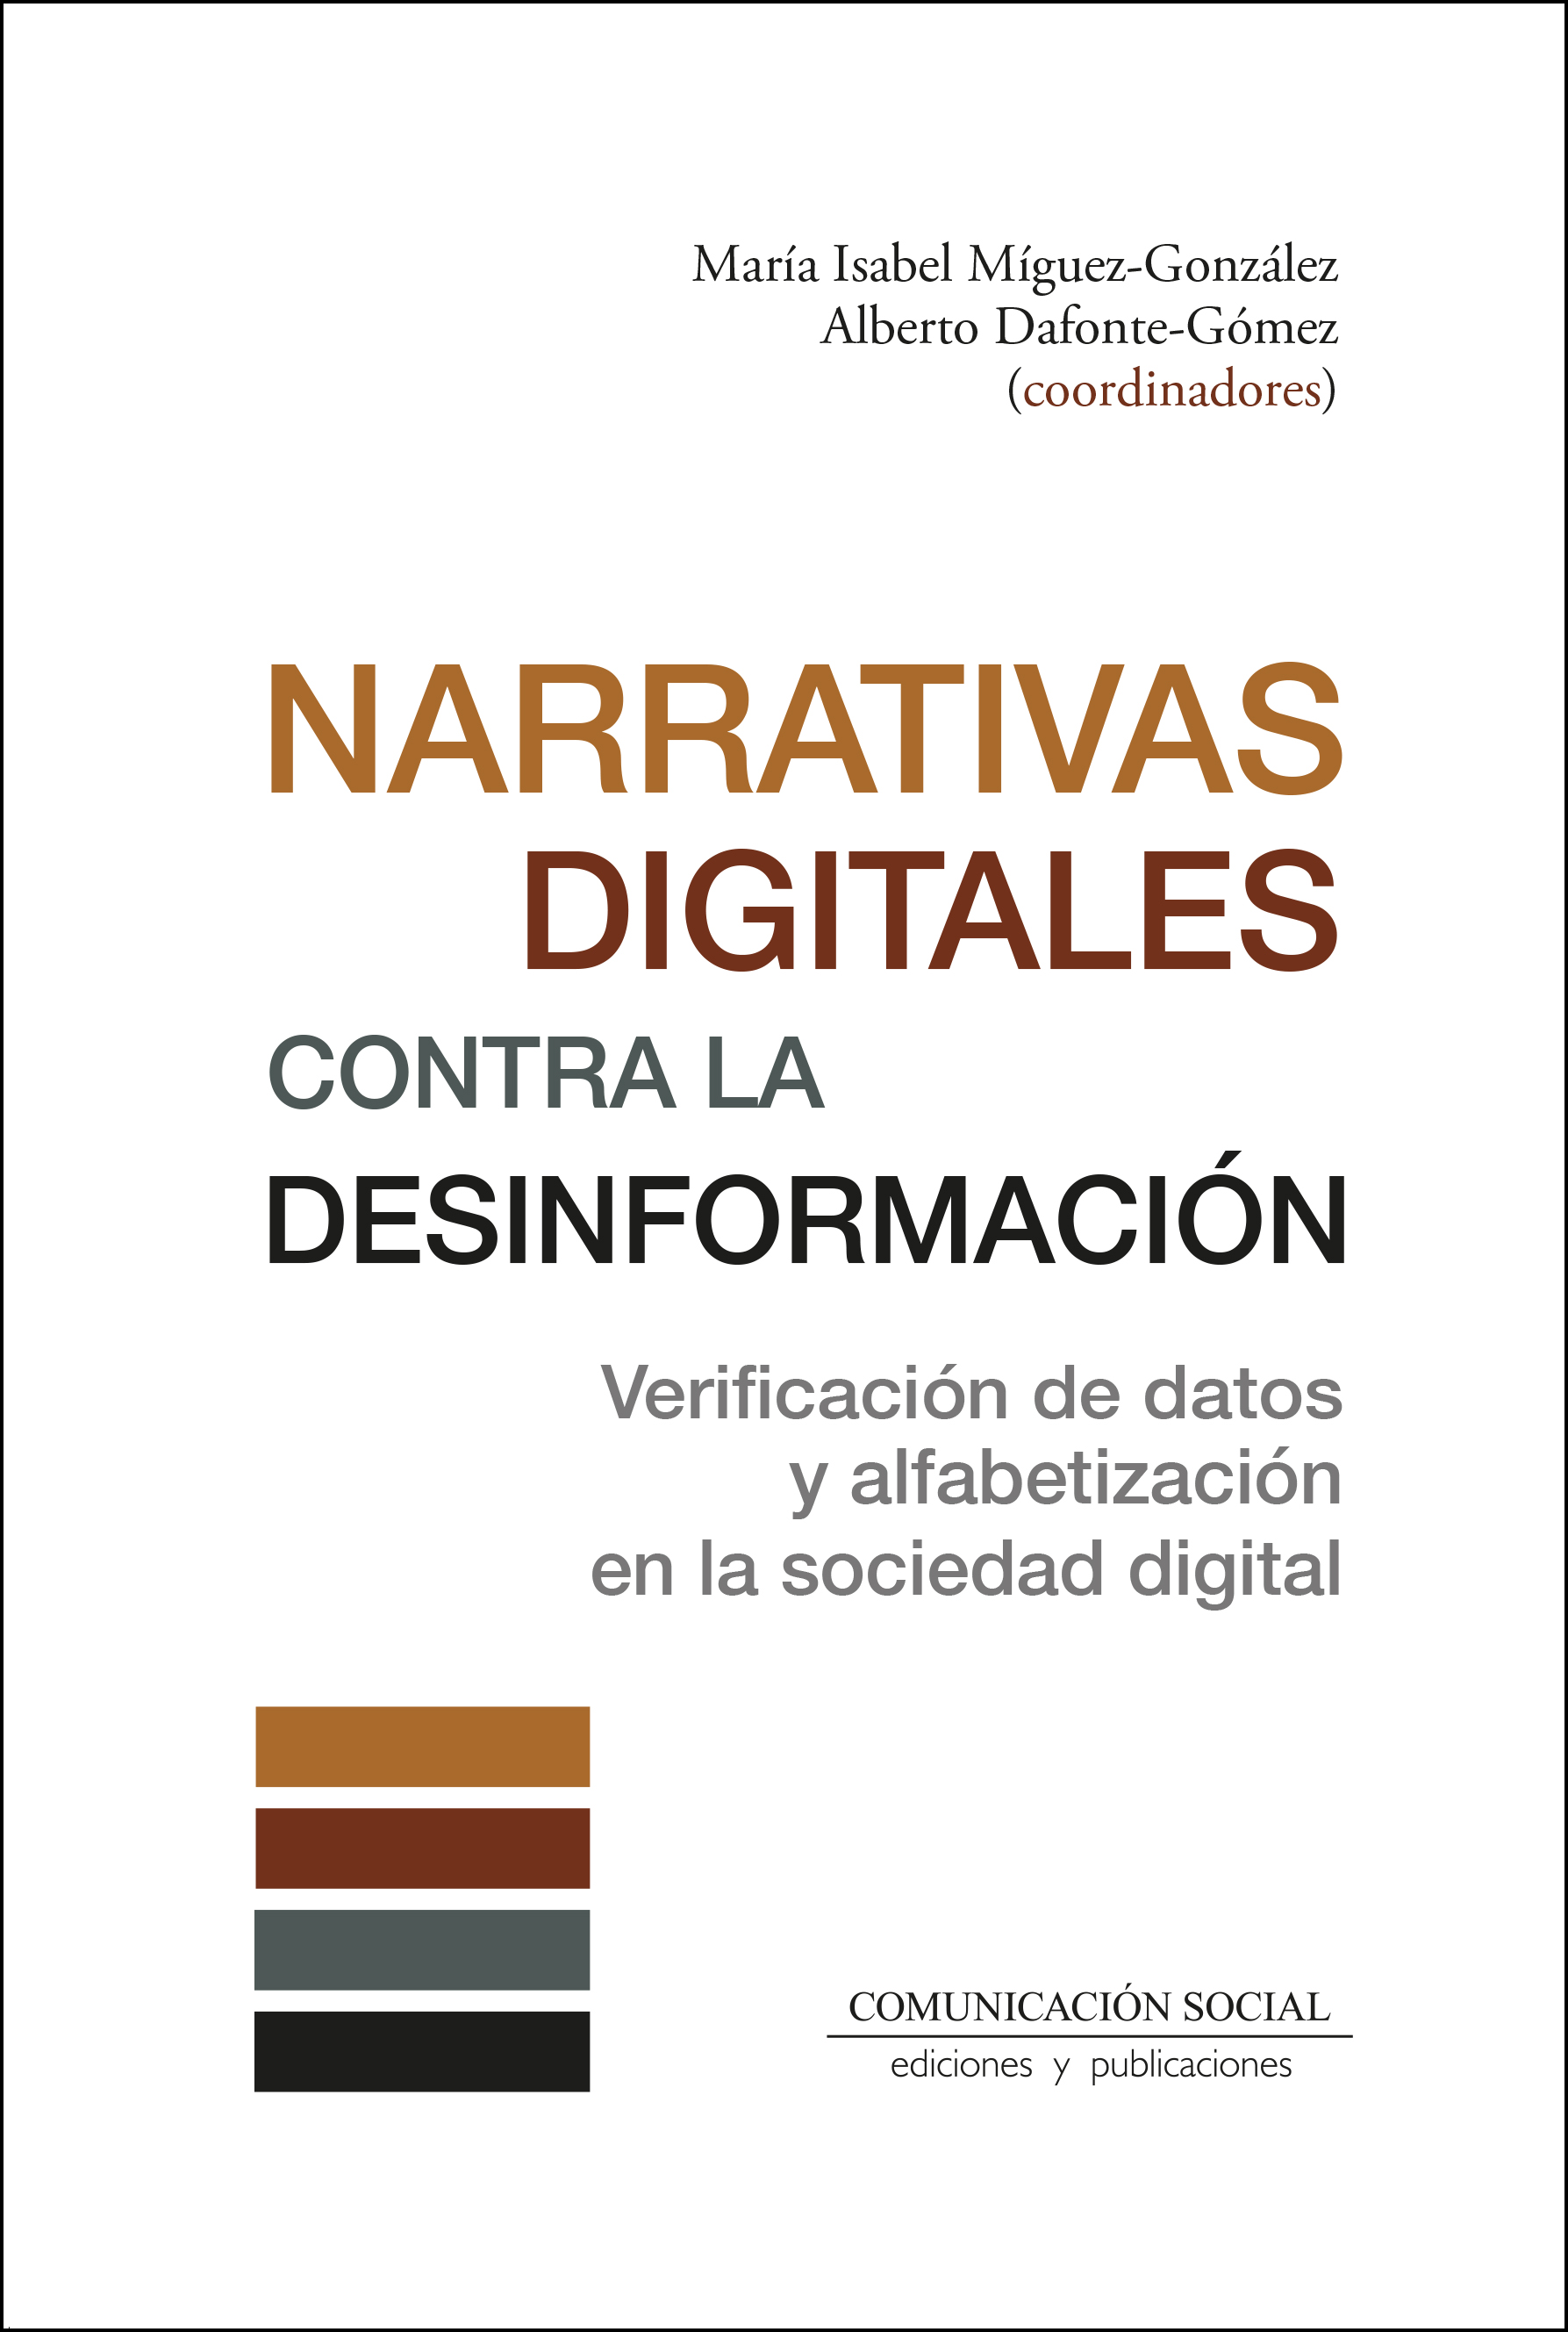 Imagen de portada del libro Narrativas digitales contra la desinformación